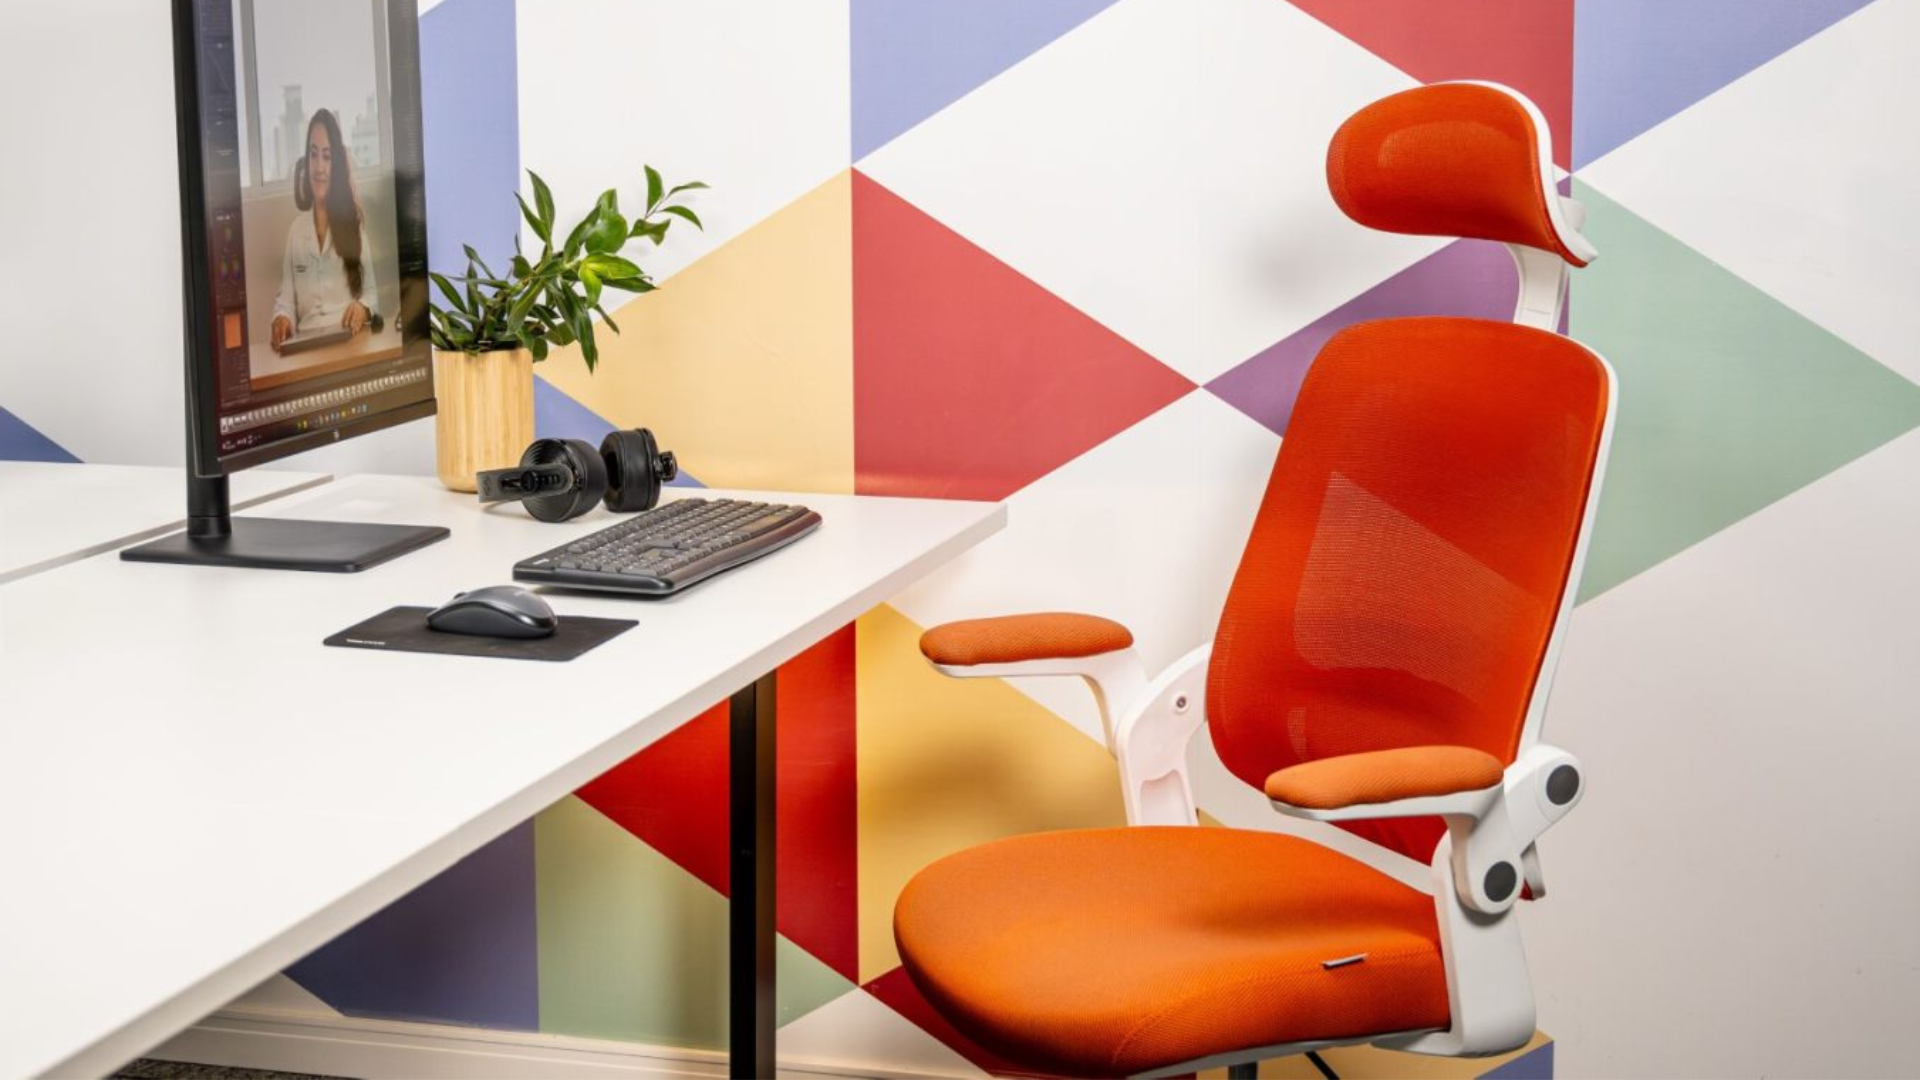 Cadeira ergonômica Astra laranja em um escritório com parede colorida.